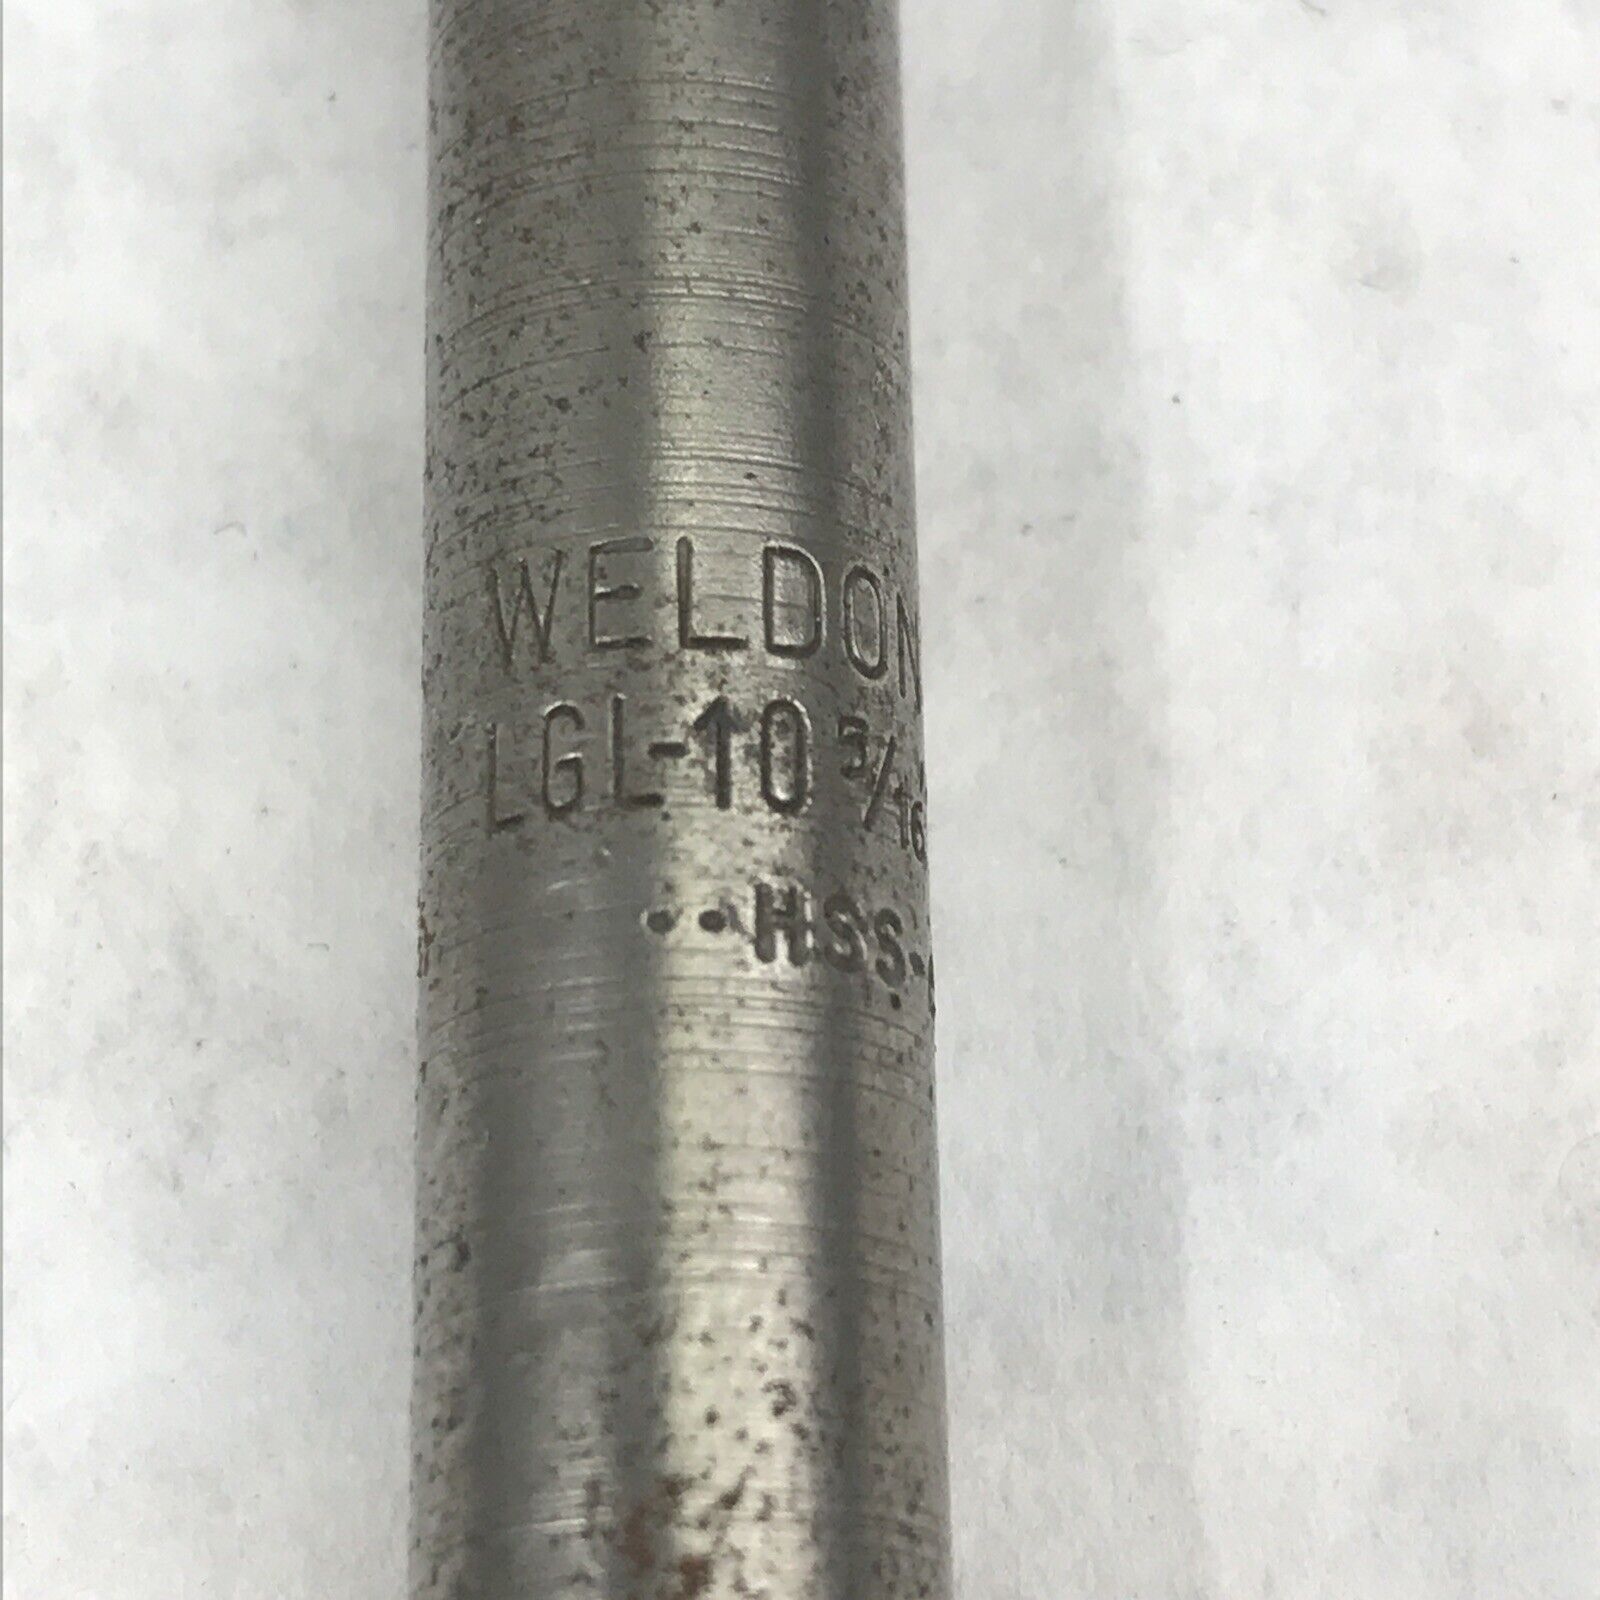 Weldon USA LGL-10 3/16" Screw MSS-62 3/4" Cutting Length End Mill Router Bit